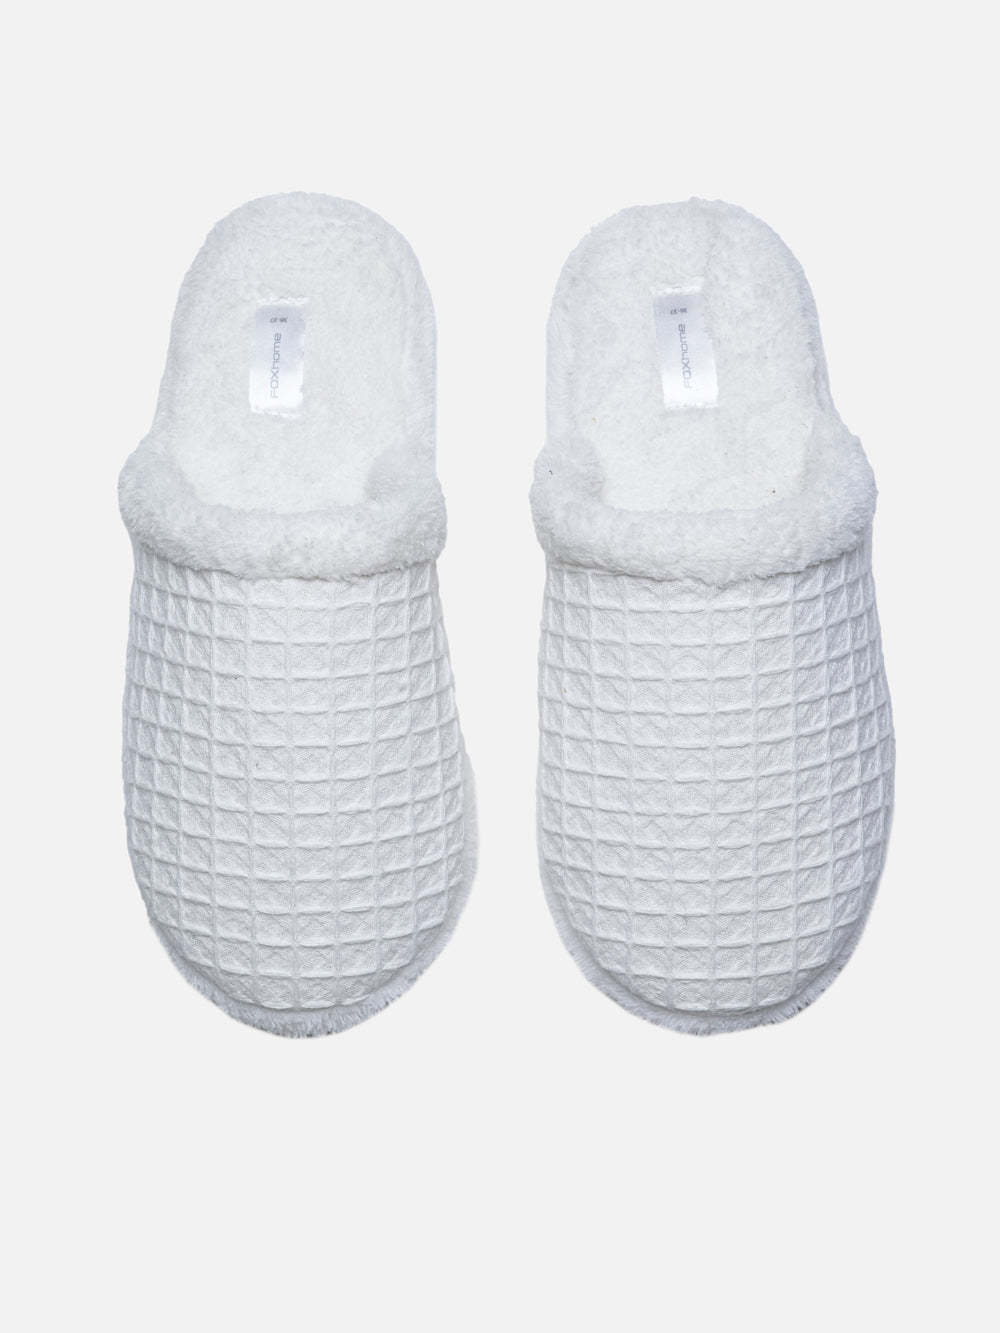 Cozy Non-Slip Indoor Slipper Socks